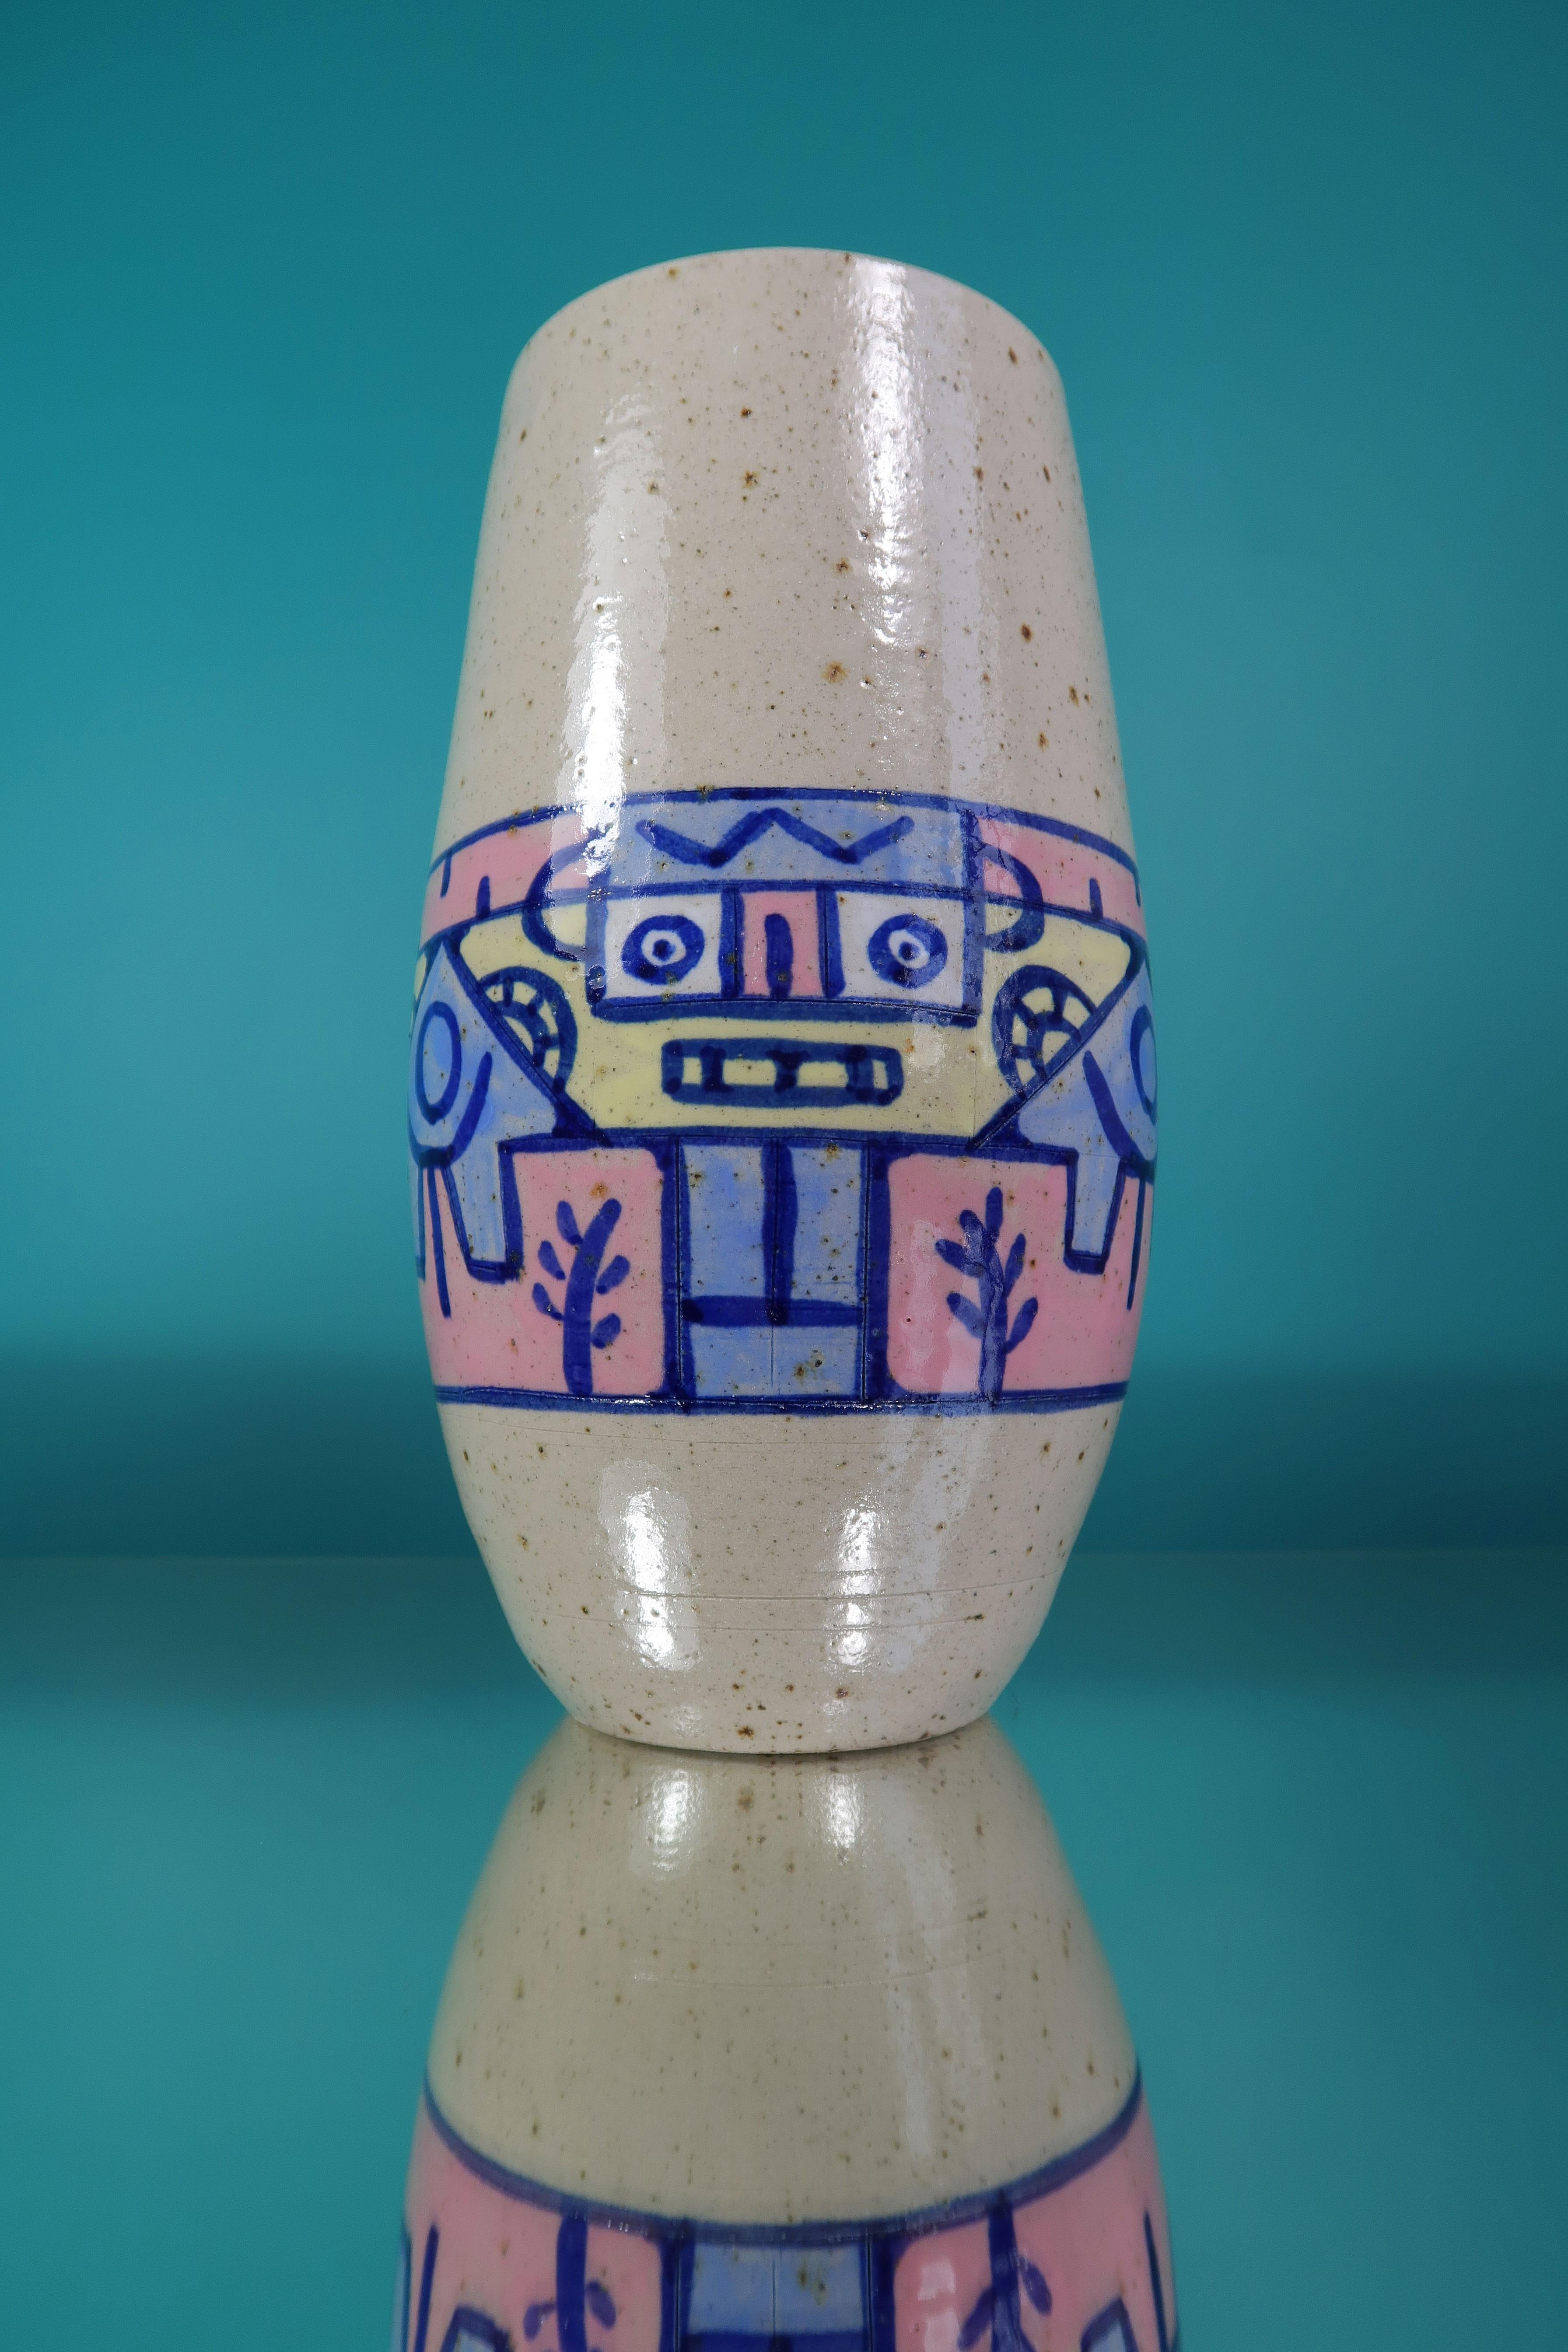 Grand vase en céramique moderniste, fait et peint à la main, fabriqué en 1990 par Néstor. Décorations cubistes multicolores en rose, jaune et bleu sous glaçure transparente. Belle condition vintage. Signé sous la base.
Europe, 1990. 